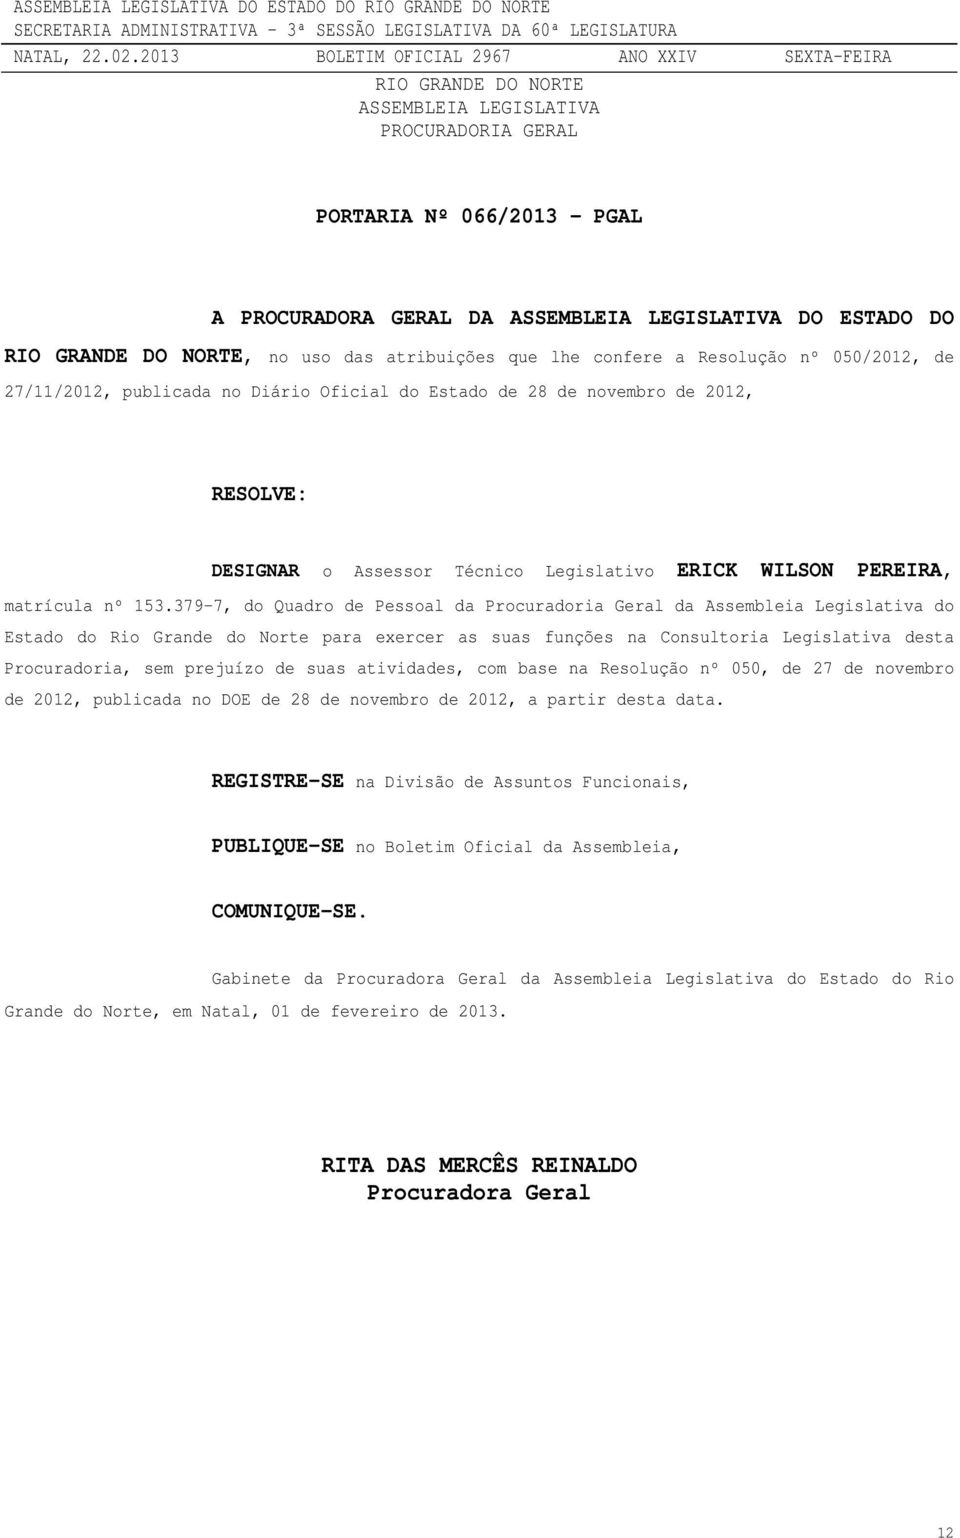 379-7, do Quadro de Pessoal da Procuradoria Geral da Assembleia Legislativa do Estado do Rio Grande do Norte para exercer as suas funções